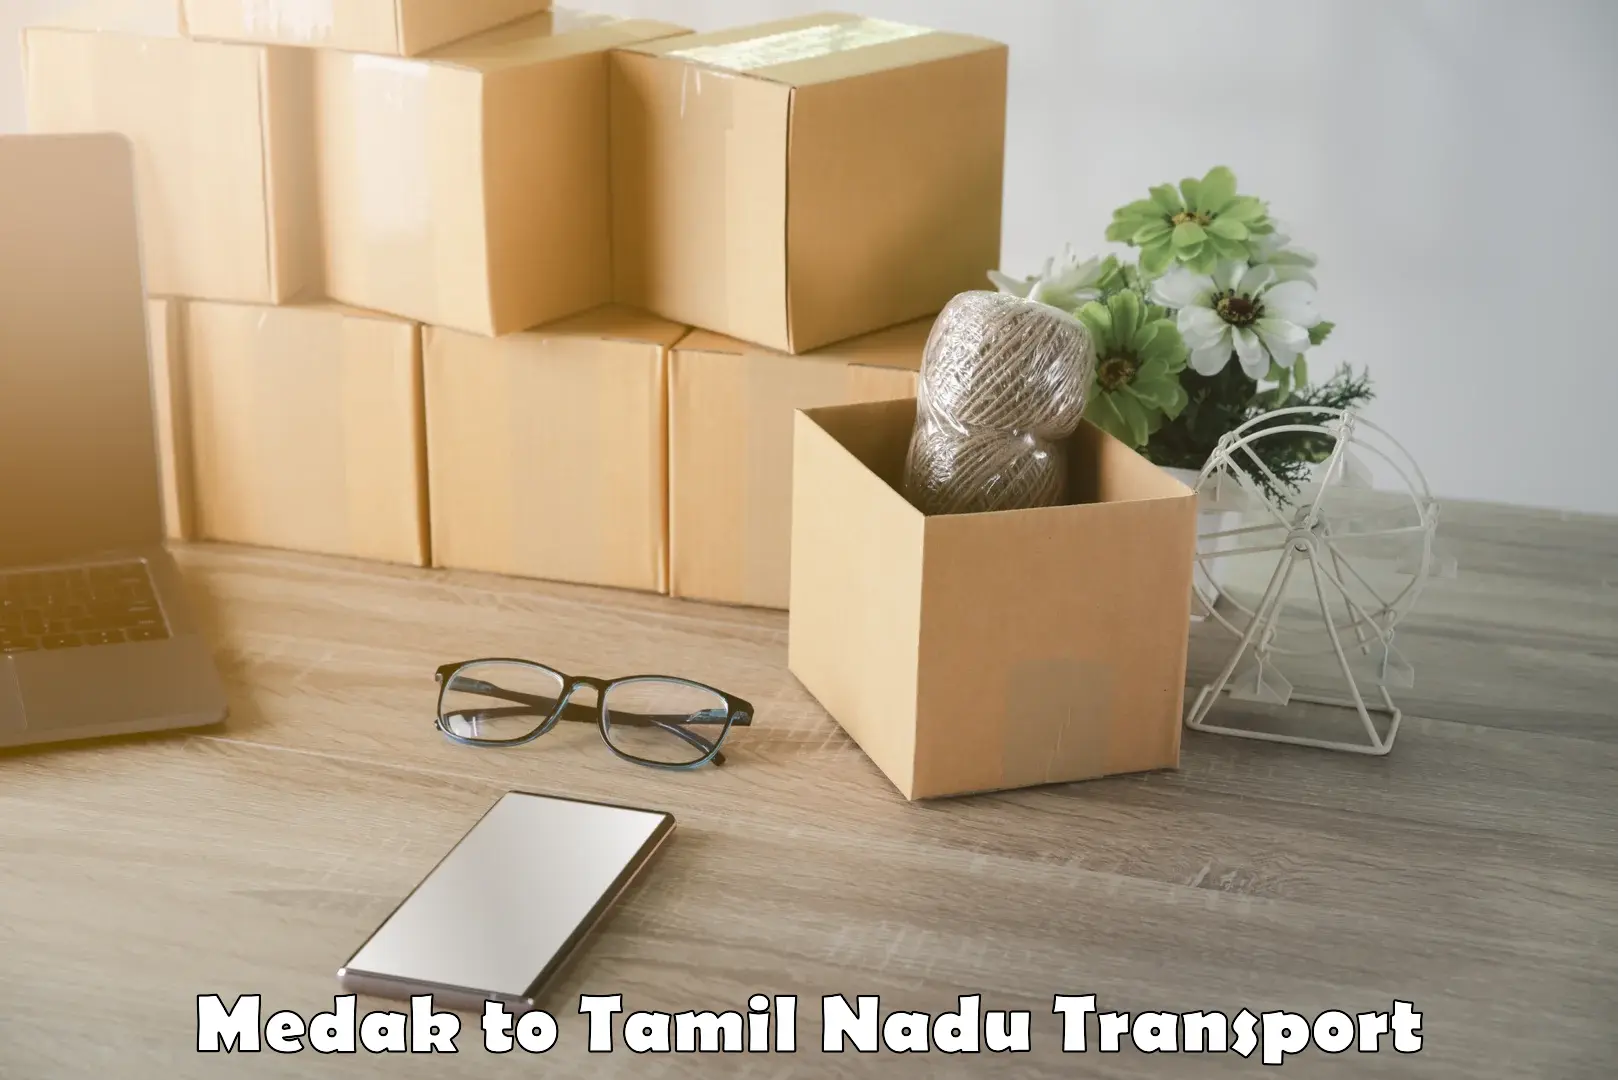 Daily parcel service transport Medak to Kanchipuram